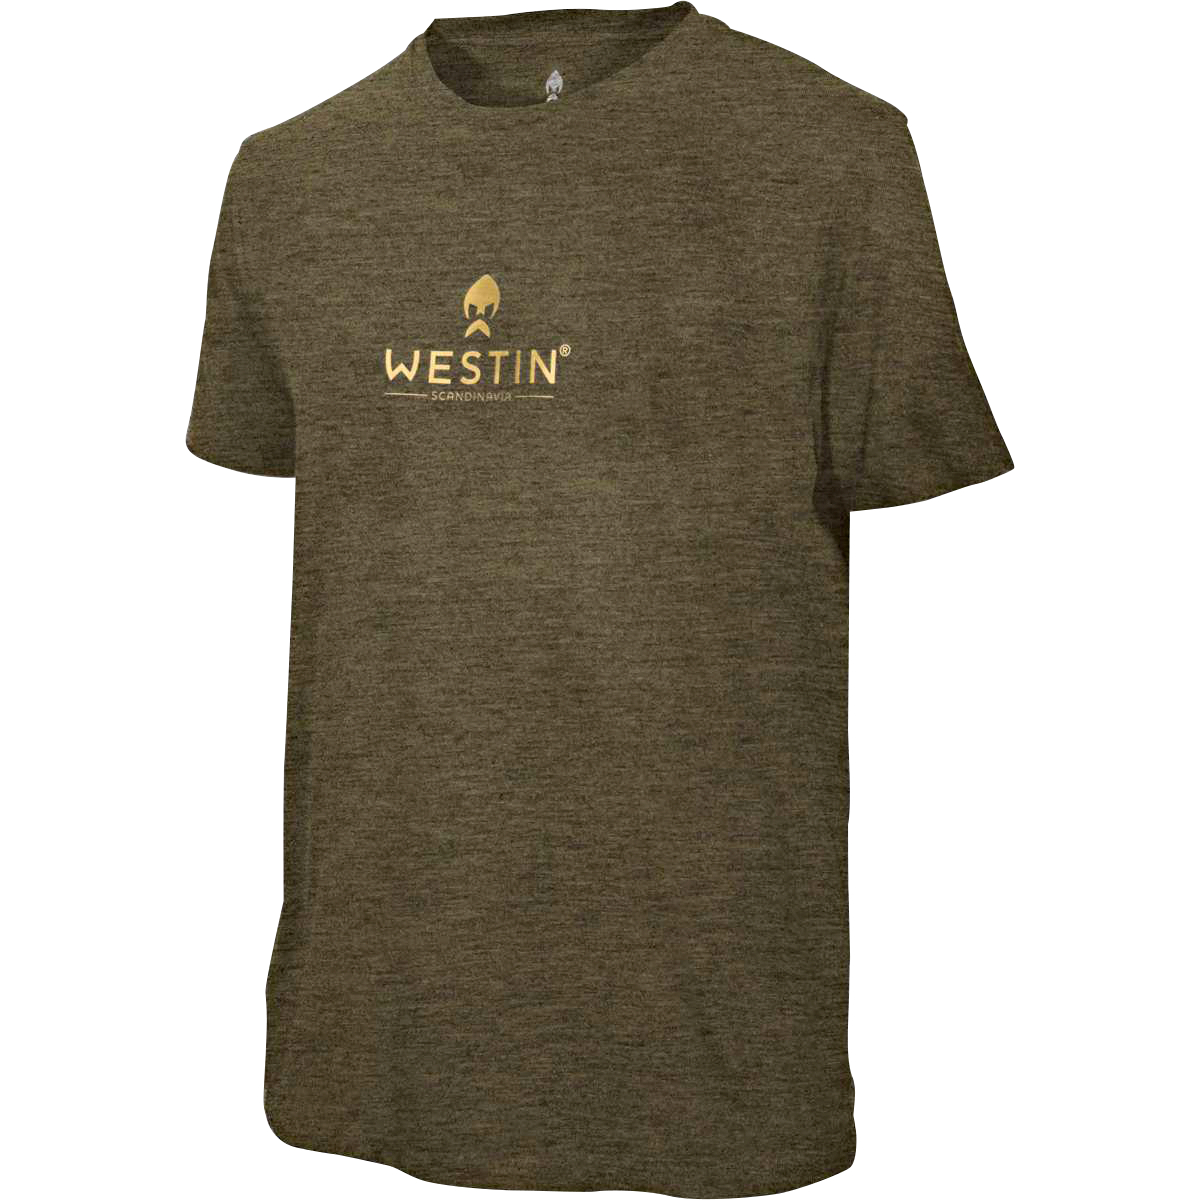 Westin Herren Style T-Shirt 